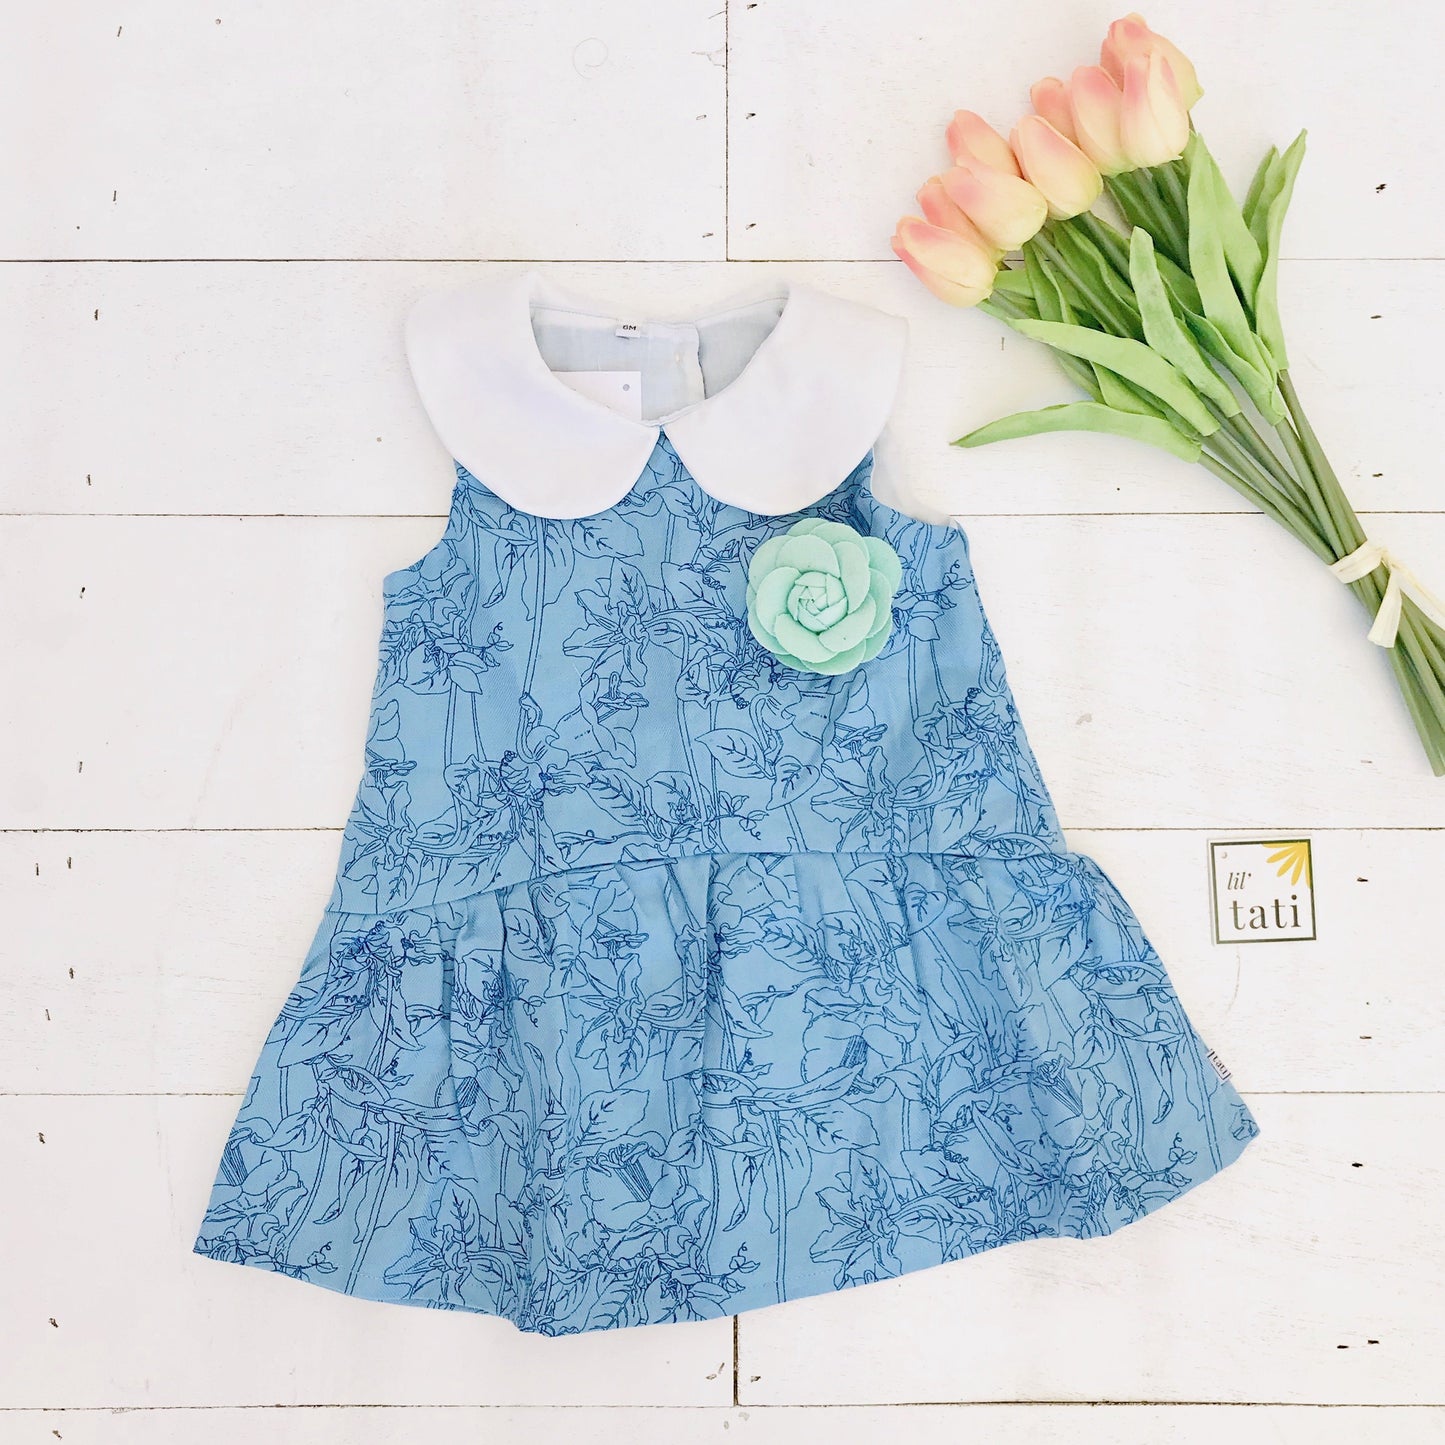 Daisy Dress in Blue Floral Sketch - Lil' Tati